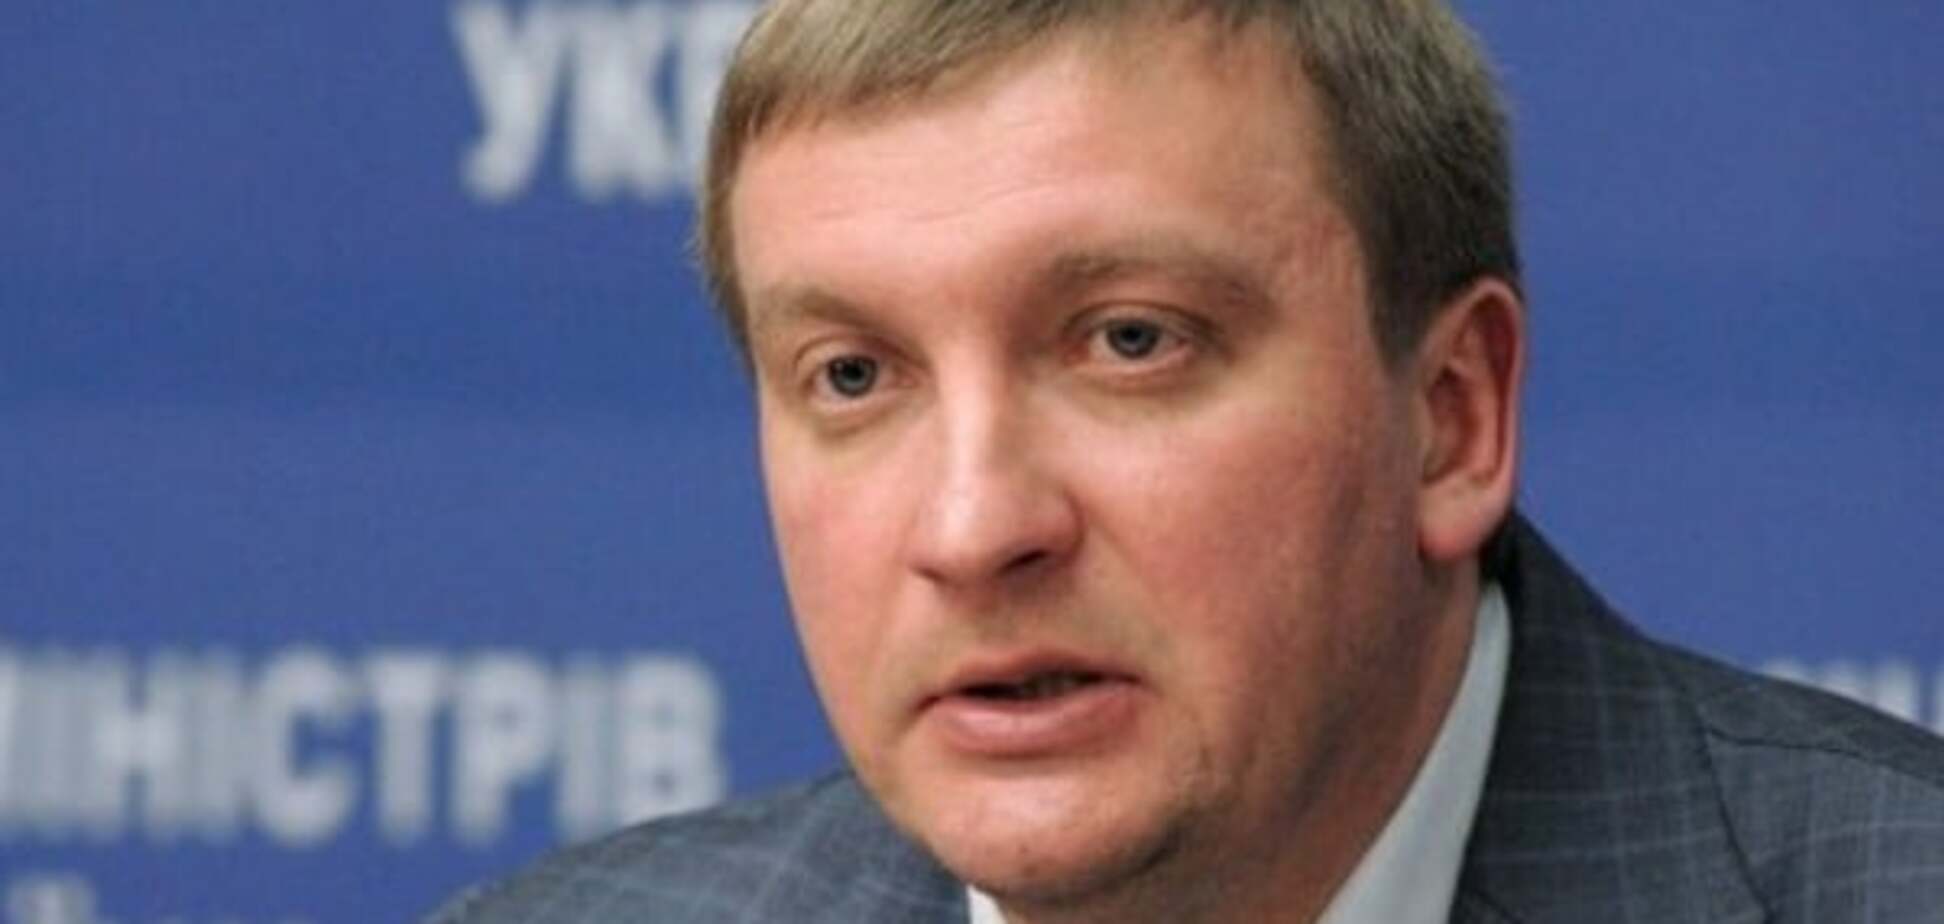 Активисты заблокировали министра юстиции в его кабинете - Соболев